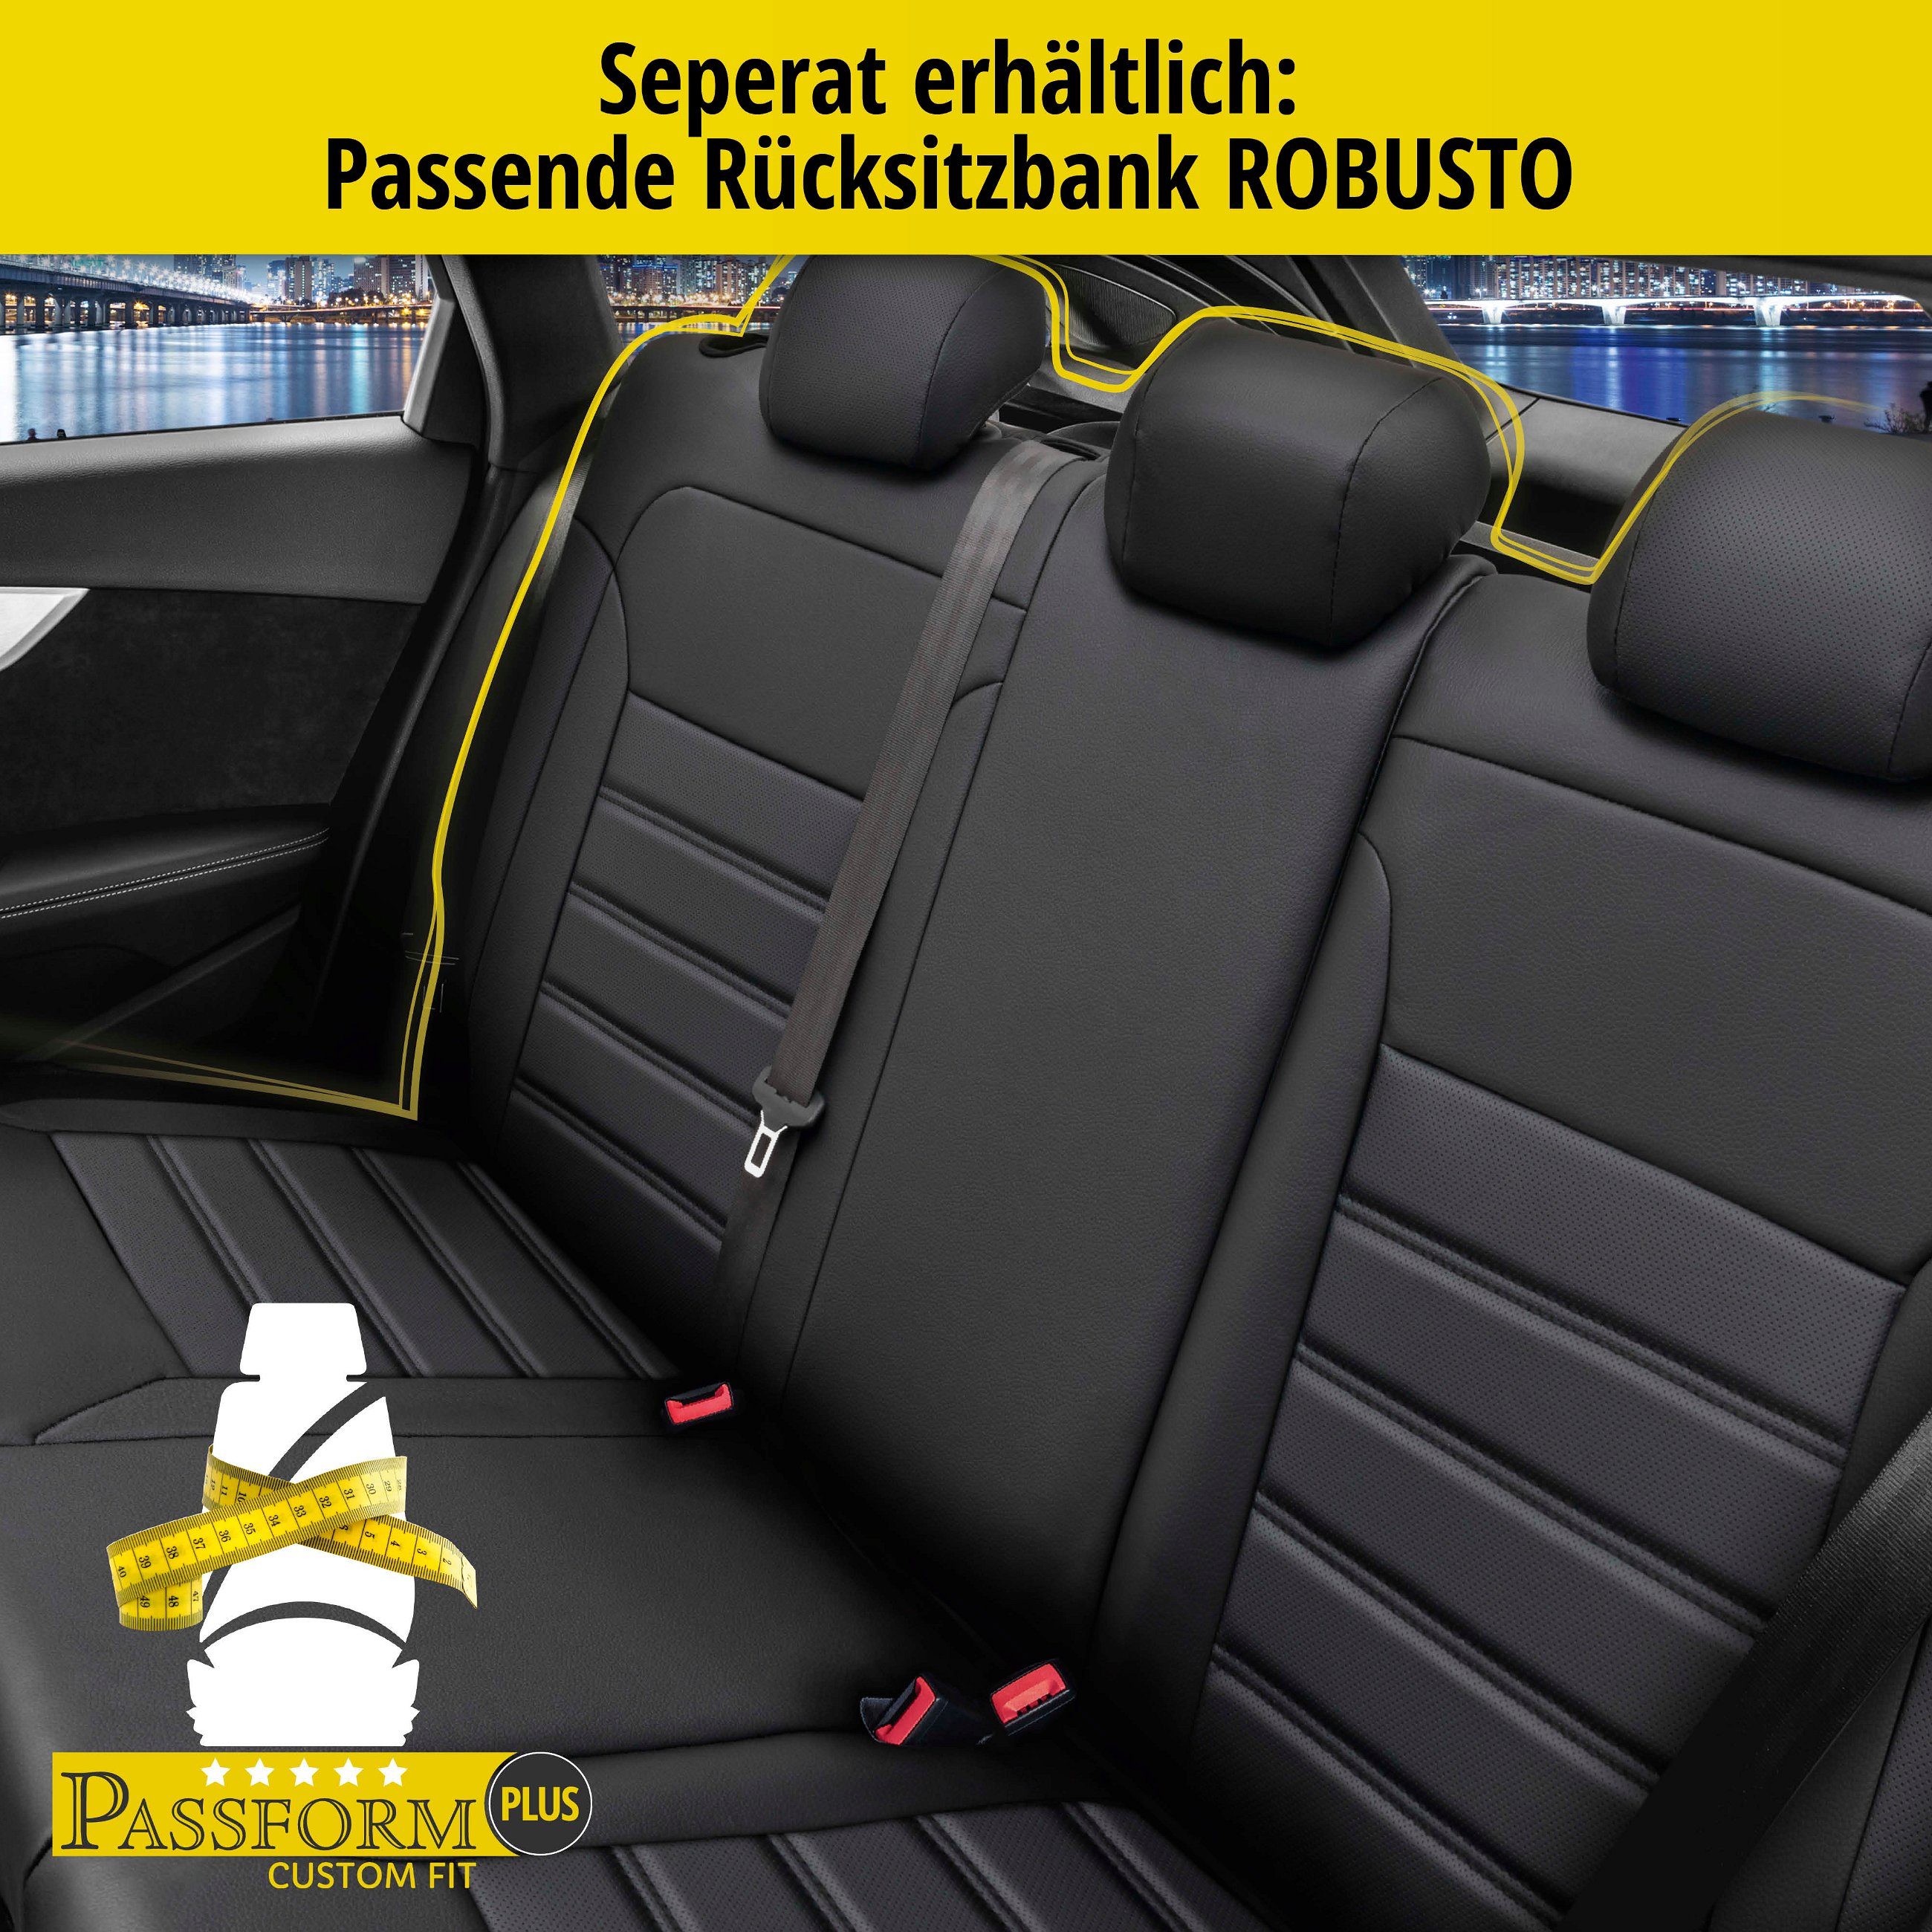 Passform Sitzbezug Robusto für Mercedes C-Klasse 07/2013-Heute, 2 Einzelsitzbezüge für Normalsitze